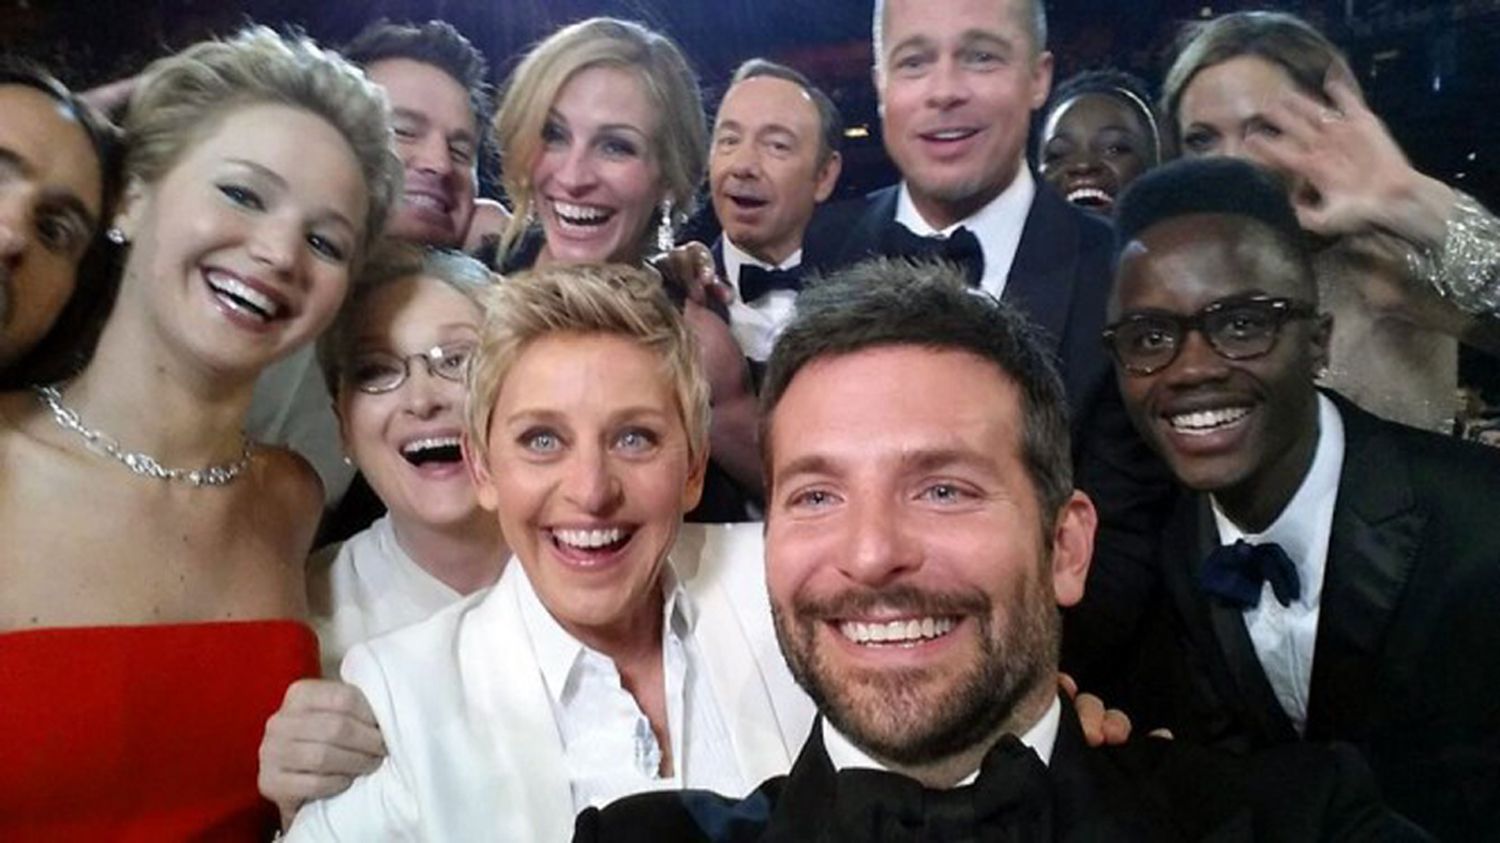 Premios Oscar: ¿Cuál es la maldición de la emblemática selfie de Ellen DeGeneres?¿Qué pasó con los actores? 